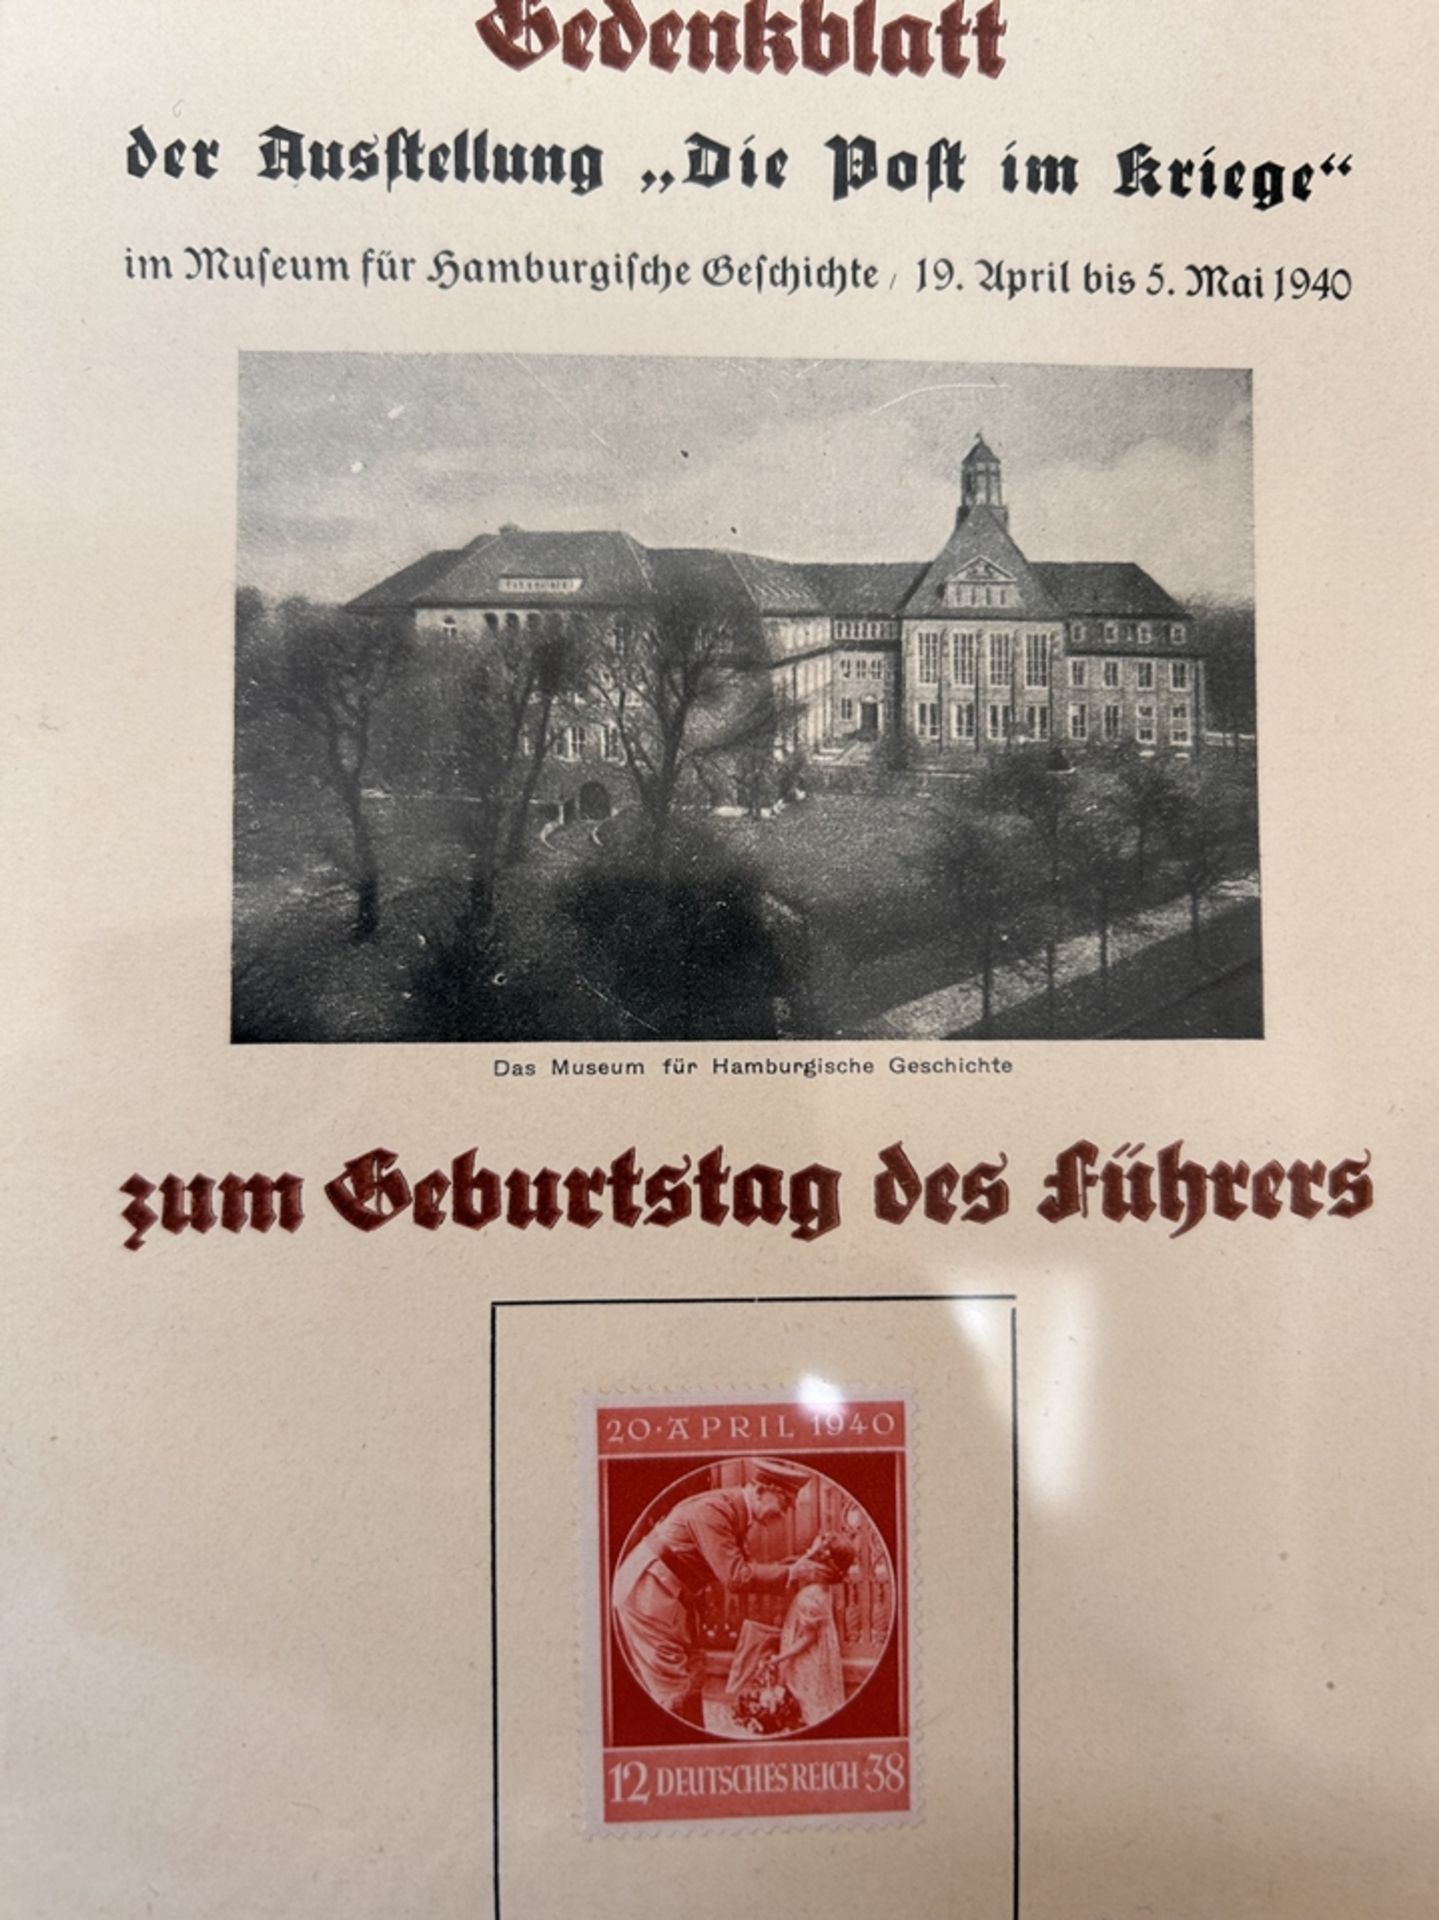 Gedenkblatt "Die Post im Kriege" Führers Geburtstag, 1940 - Image 2 of 2